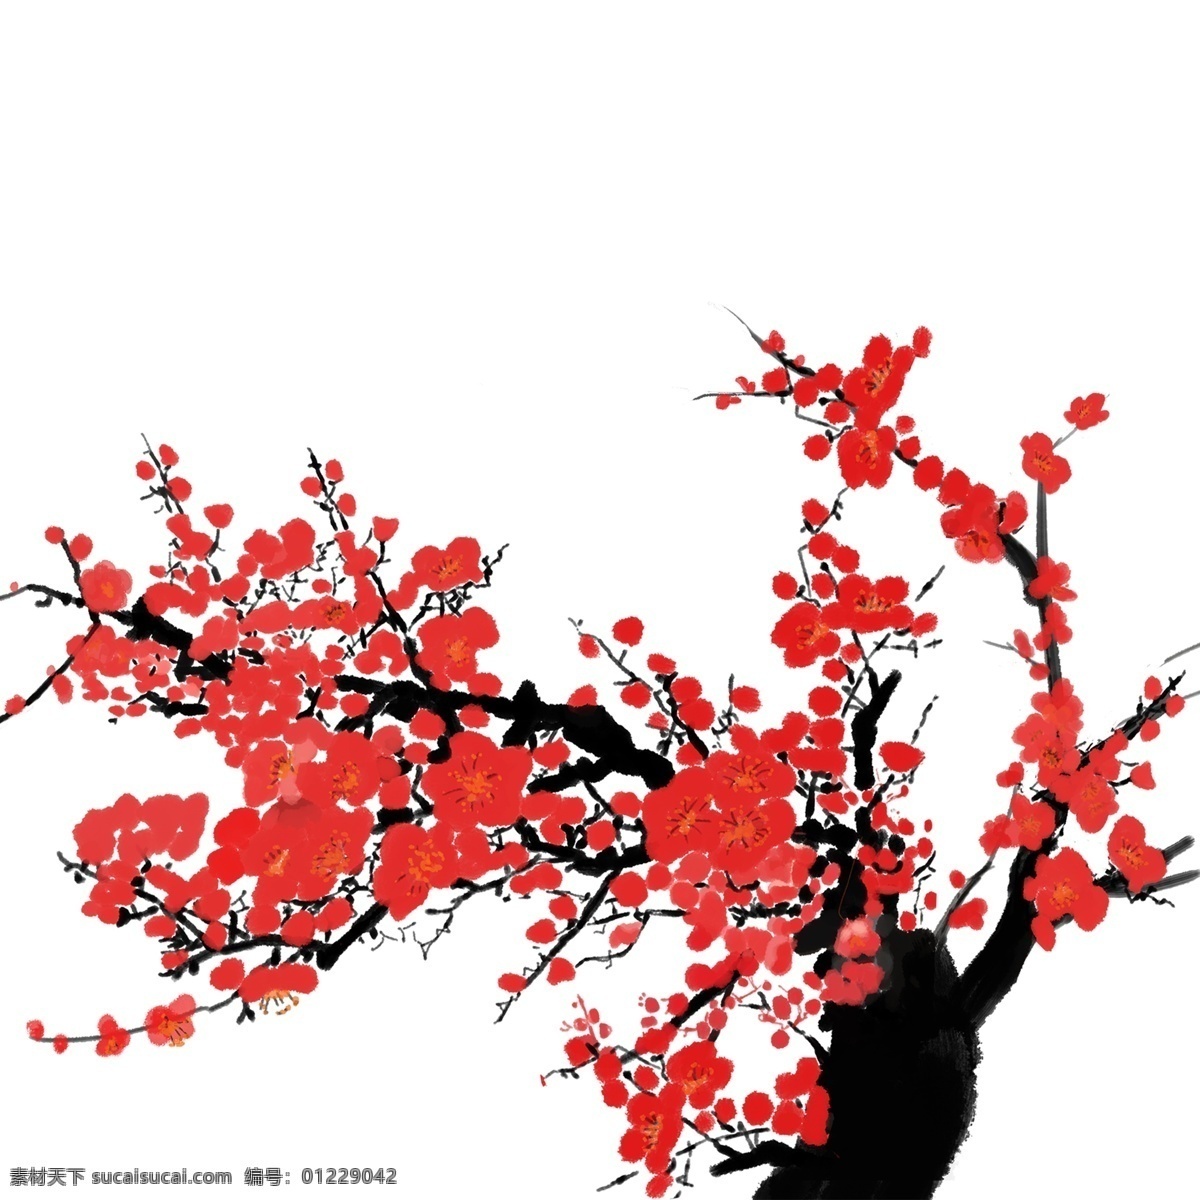 卡通 手绘 梅花 树 中国 风 元素 中国风 植物 花卉 古典 插画 红梅 古风 优美 冬梅 腊梅 冬季元素